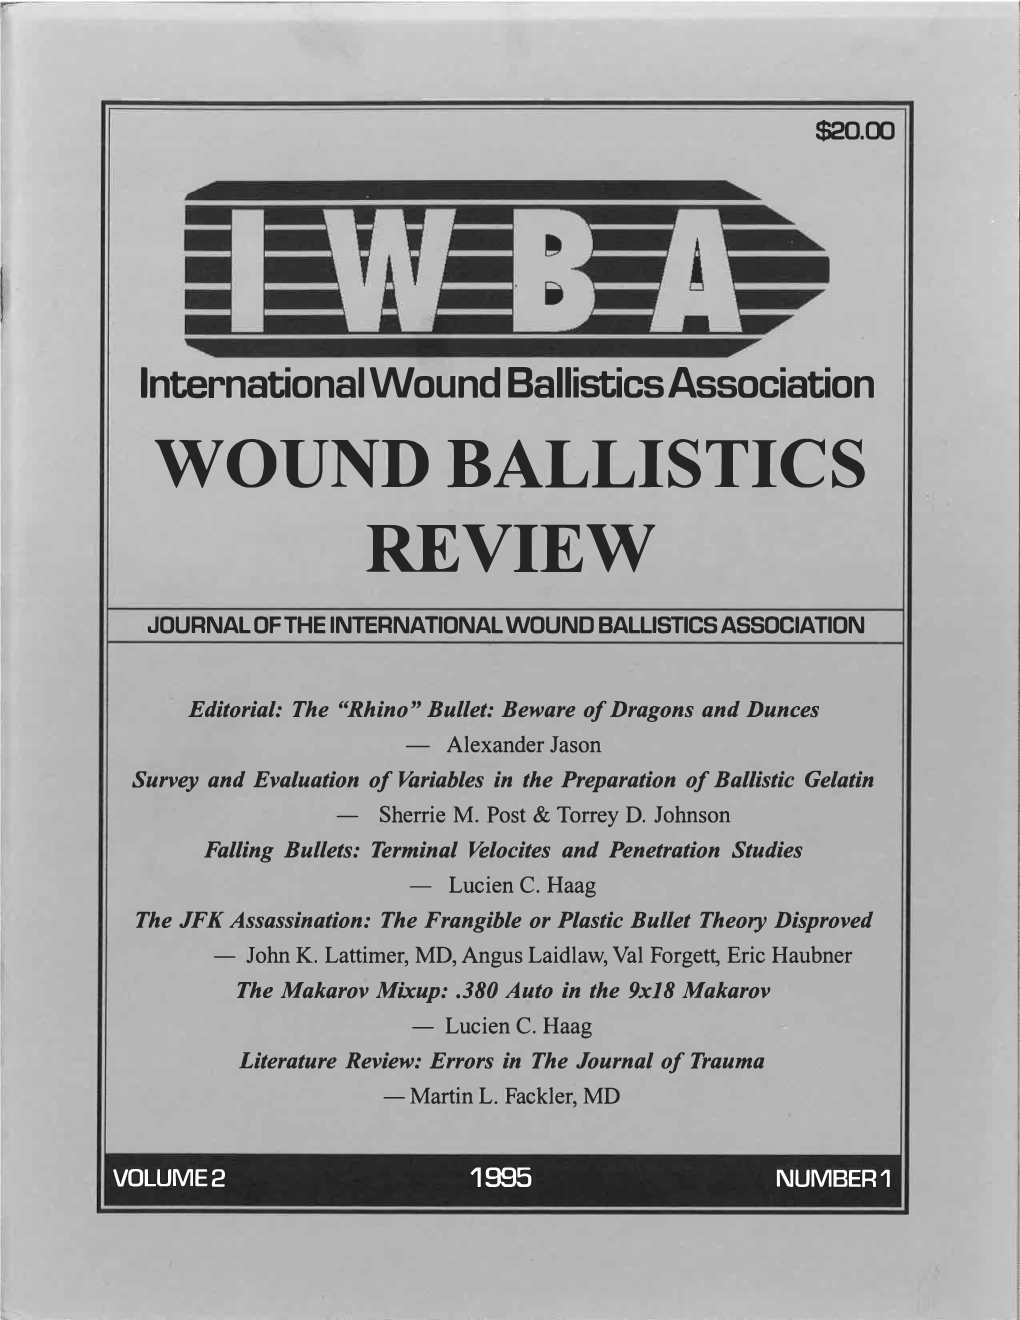 Wound Ballistics Review